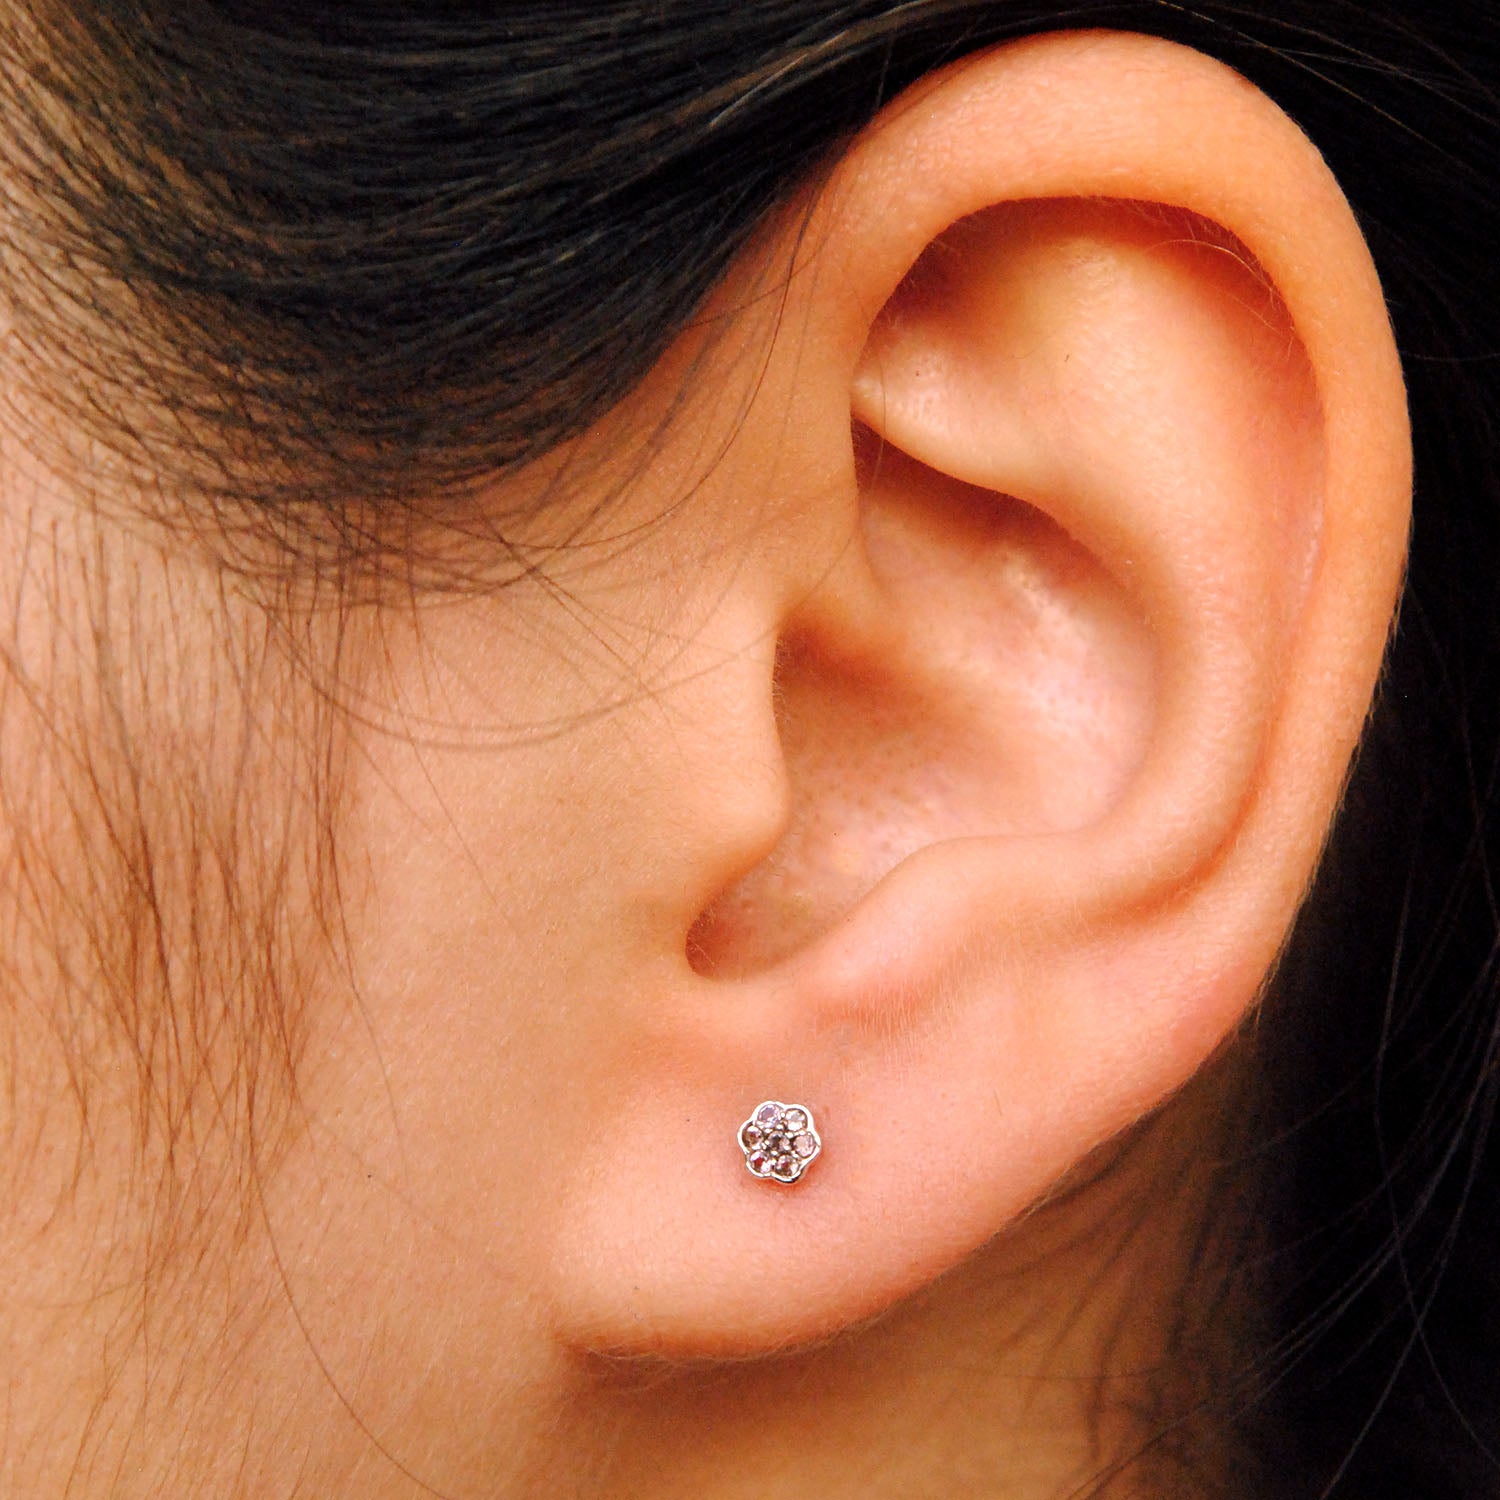 Double Piercing Earring, Double Sided Earring, Ear Jacket Earring, Two Hole  Minimalist Earring, Single Earring, Sleeper Earrings - Etsy | Ear piercing  for women, Ear jacket earring, Etsy earrings